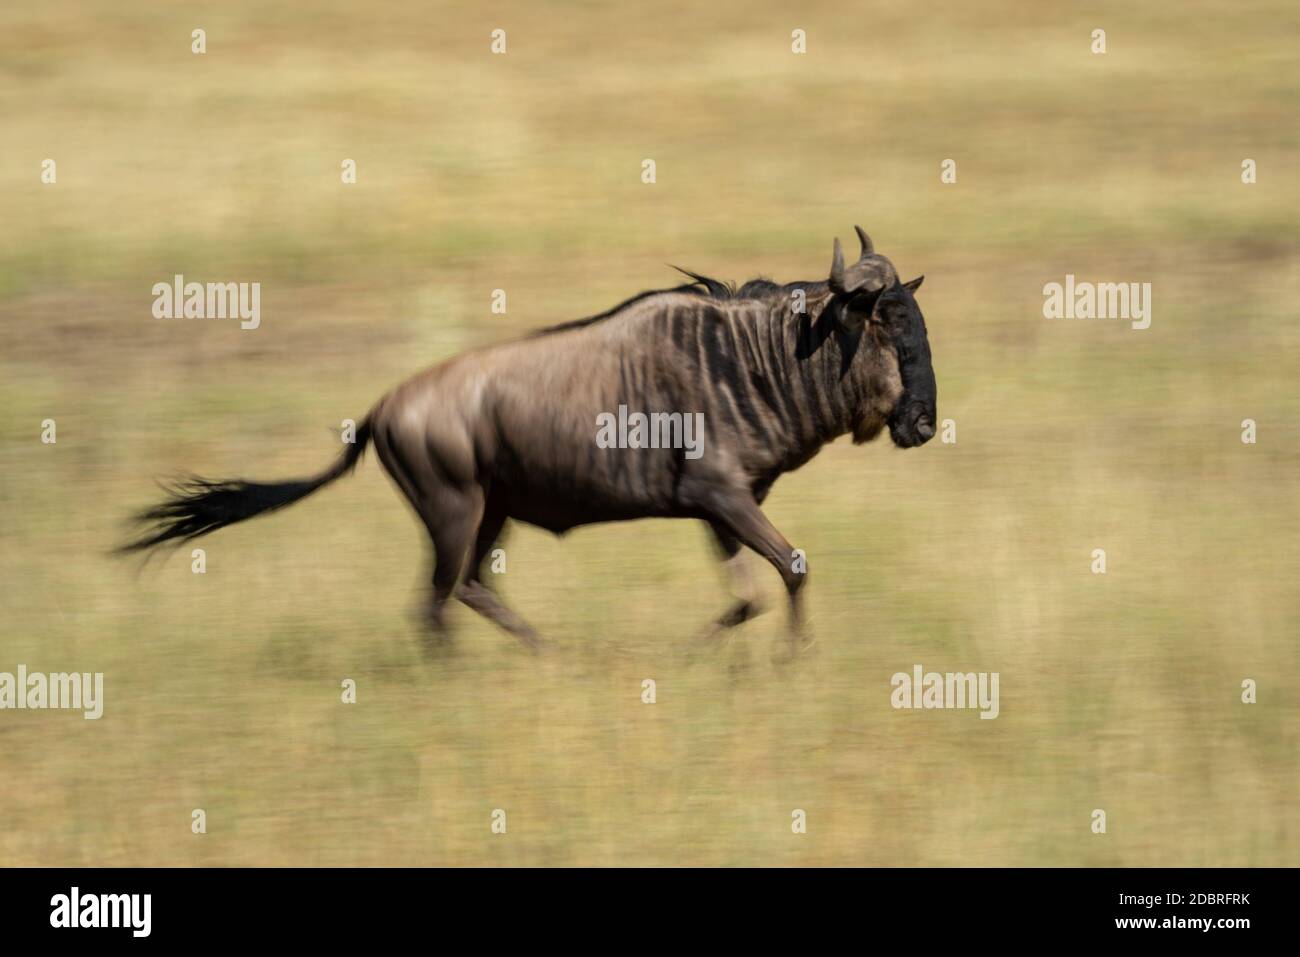 Slow pan of blue wildebeest on savannah Stock Photo